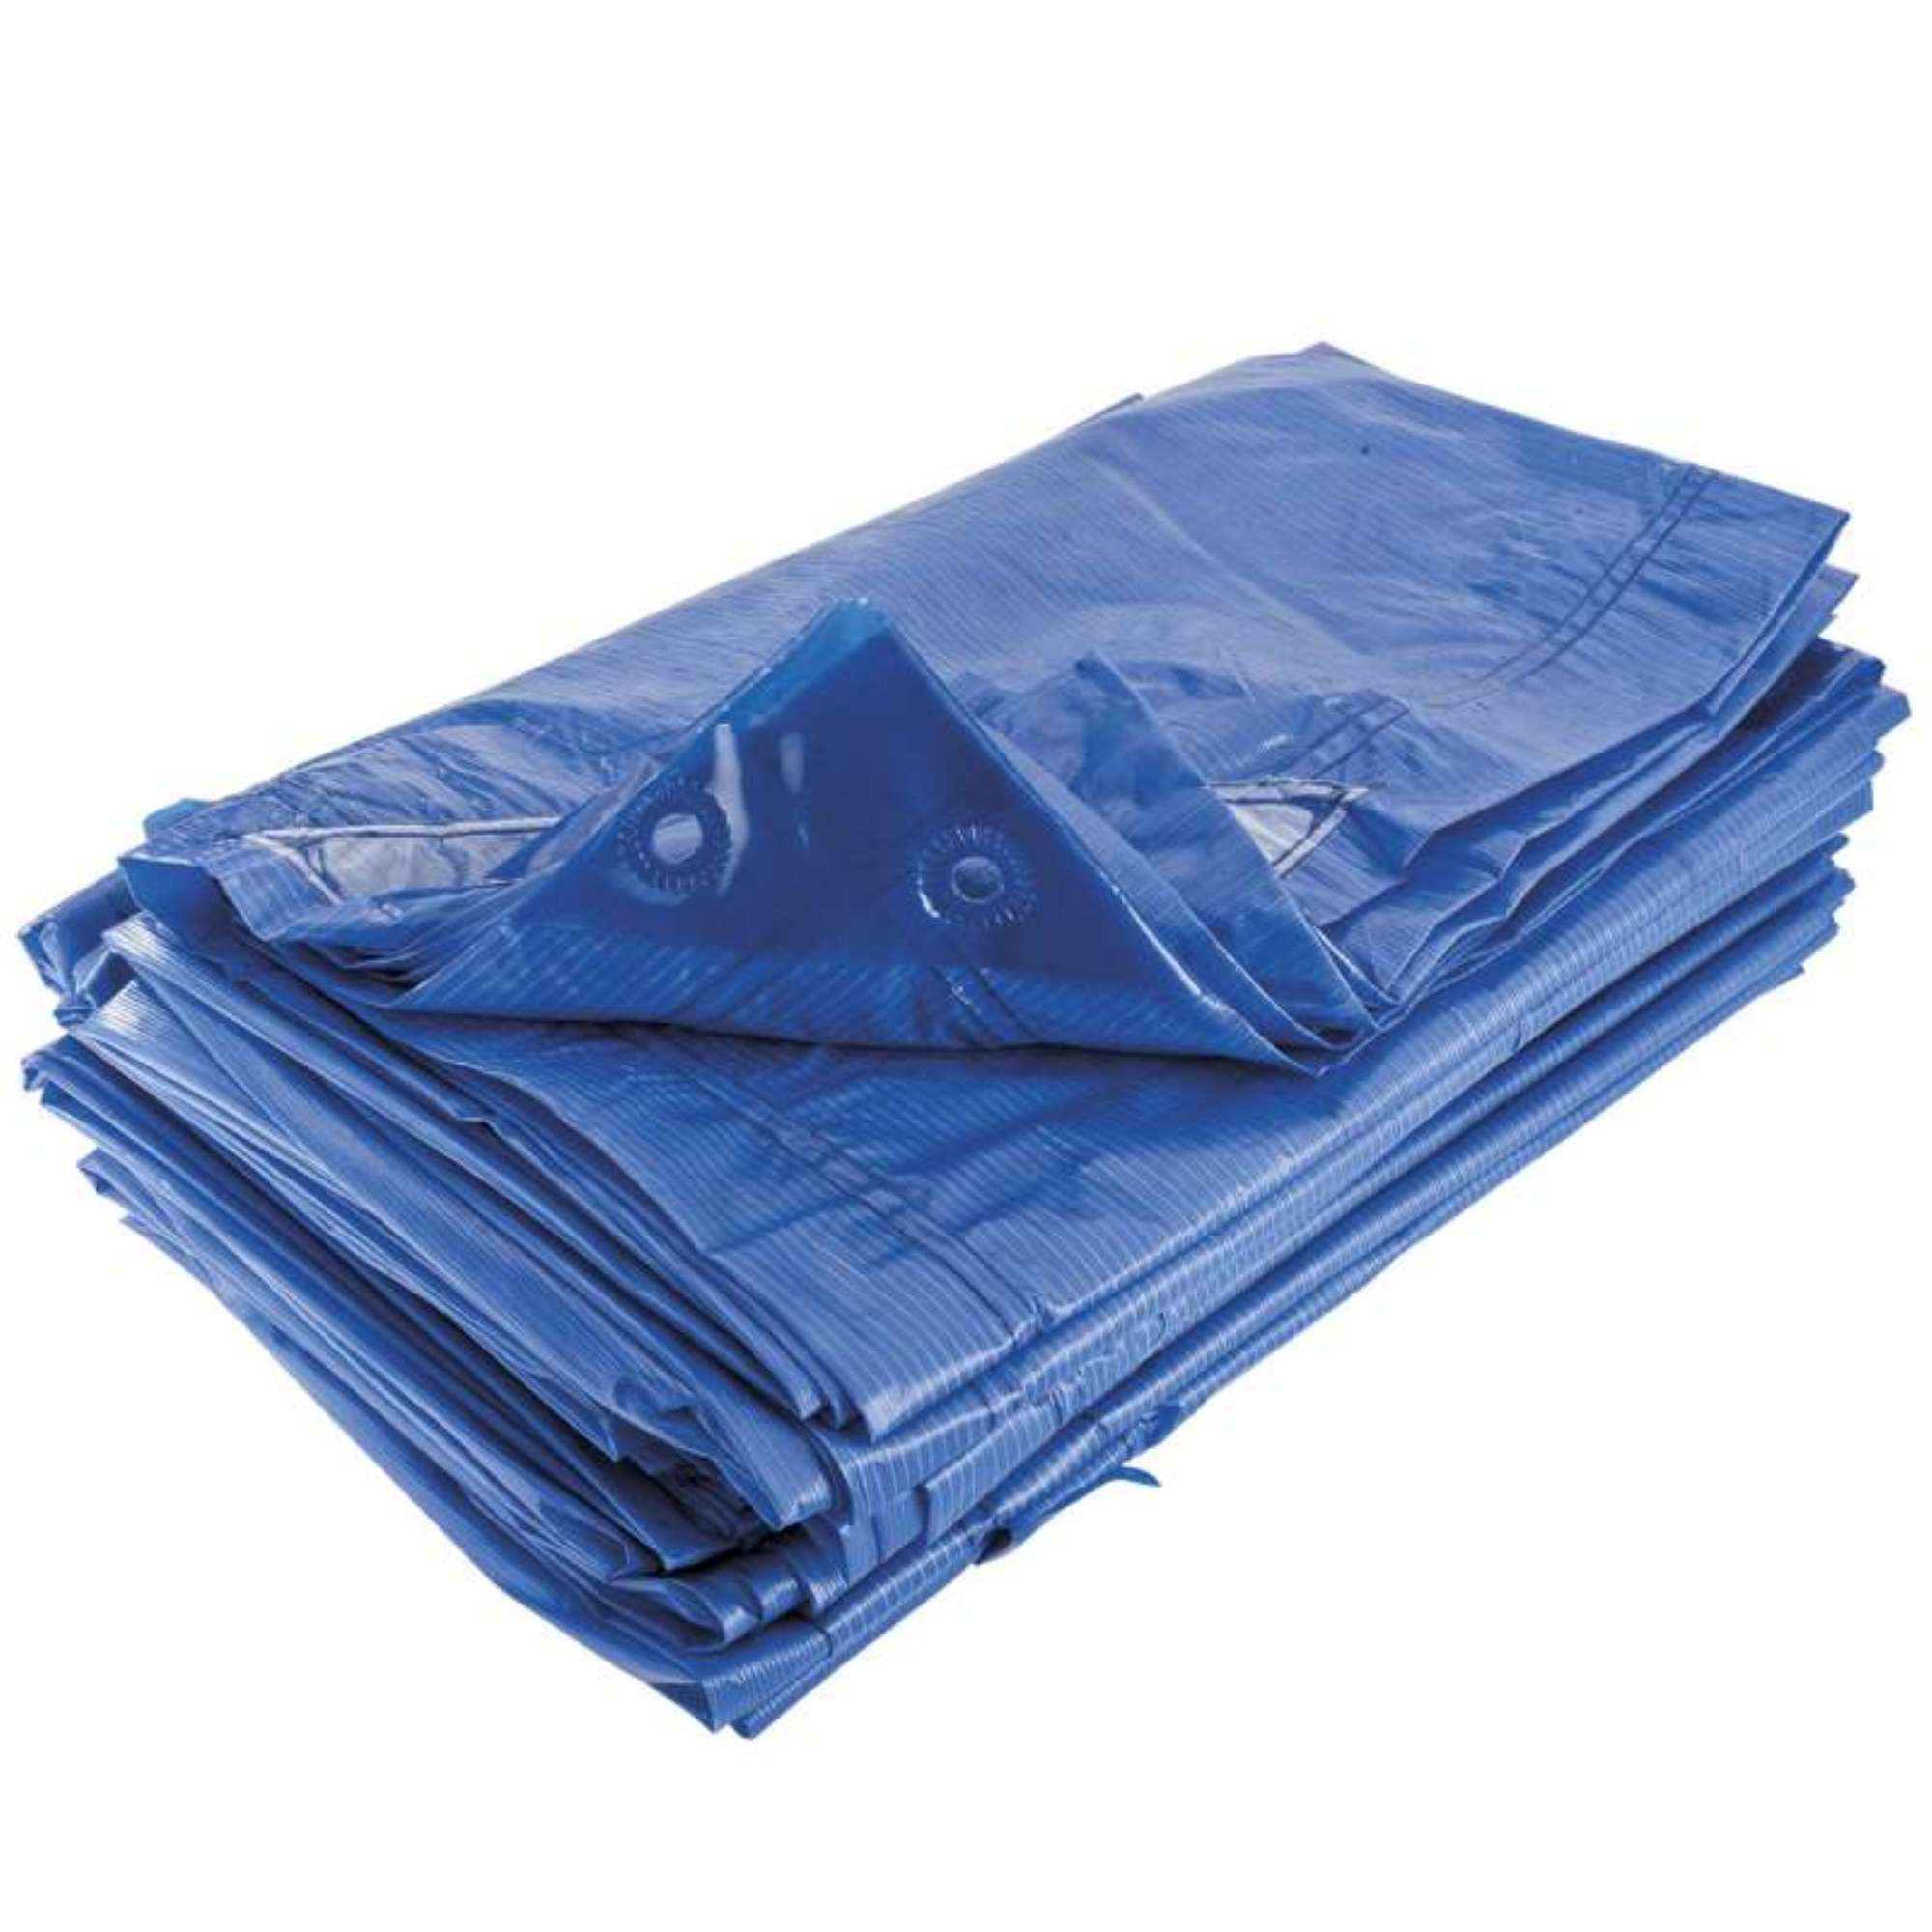 Bâche de protection bleue 4 x 5 m 150g/m² - bâche en polyéthylène